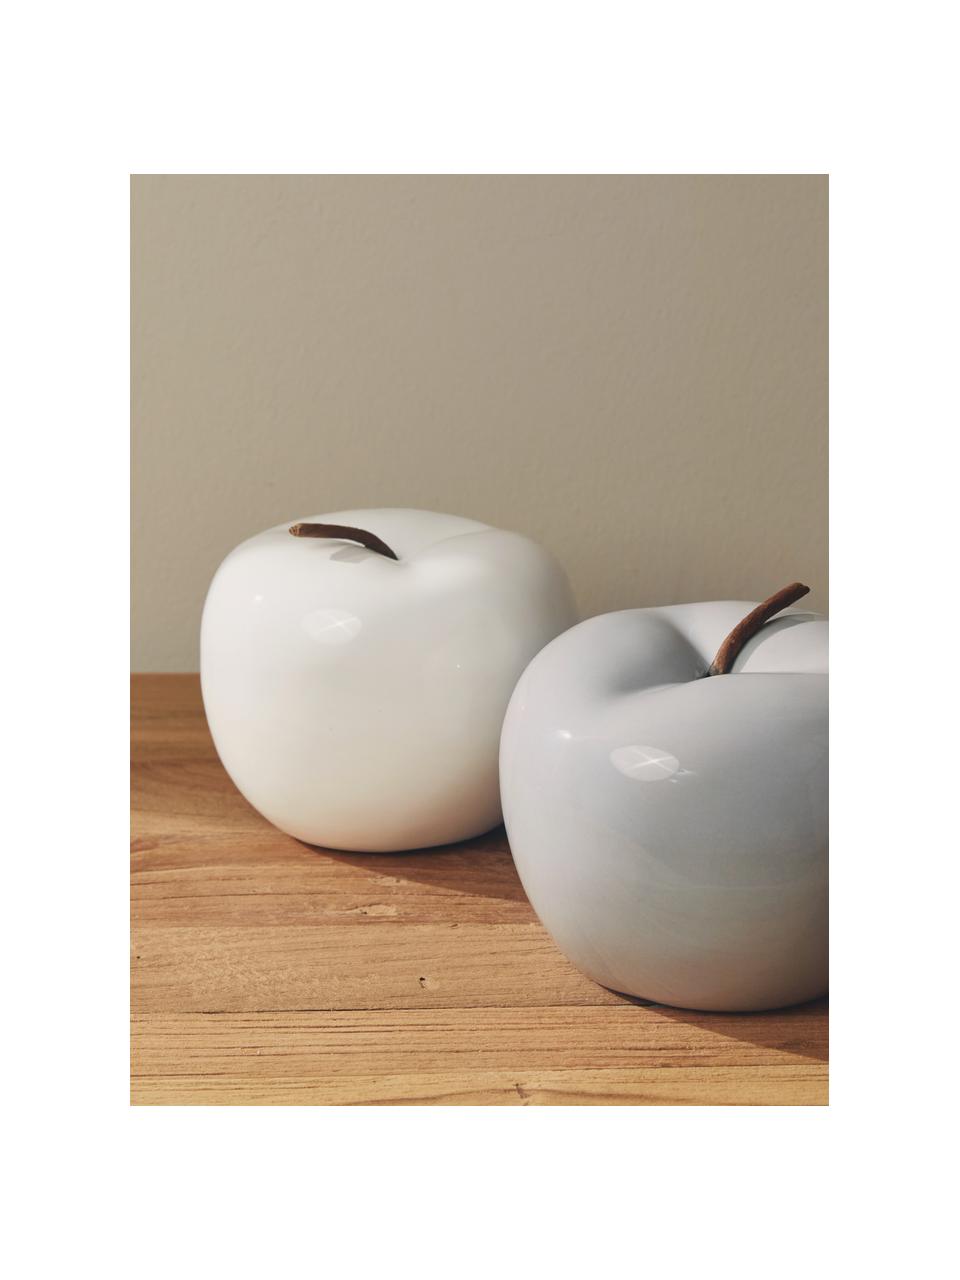 Manzanas decorativas Alvaro, 2 uds., Gres, Blanco, gris claro, Ø 13 x Al 12 cm